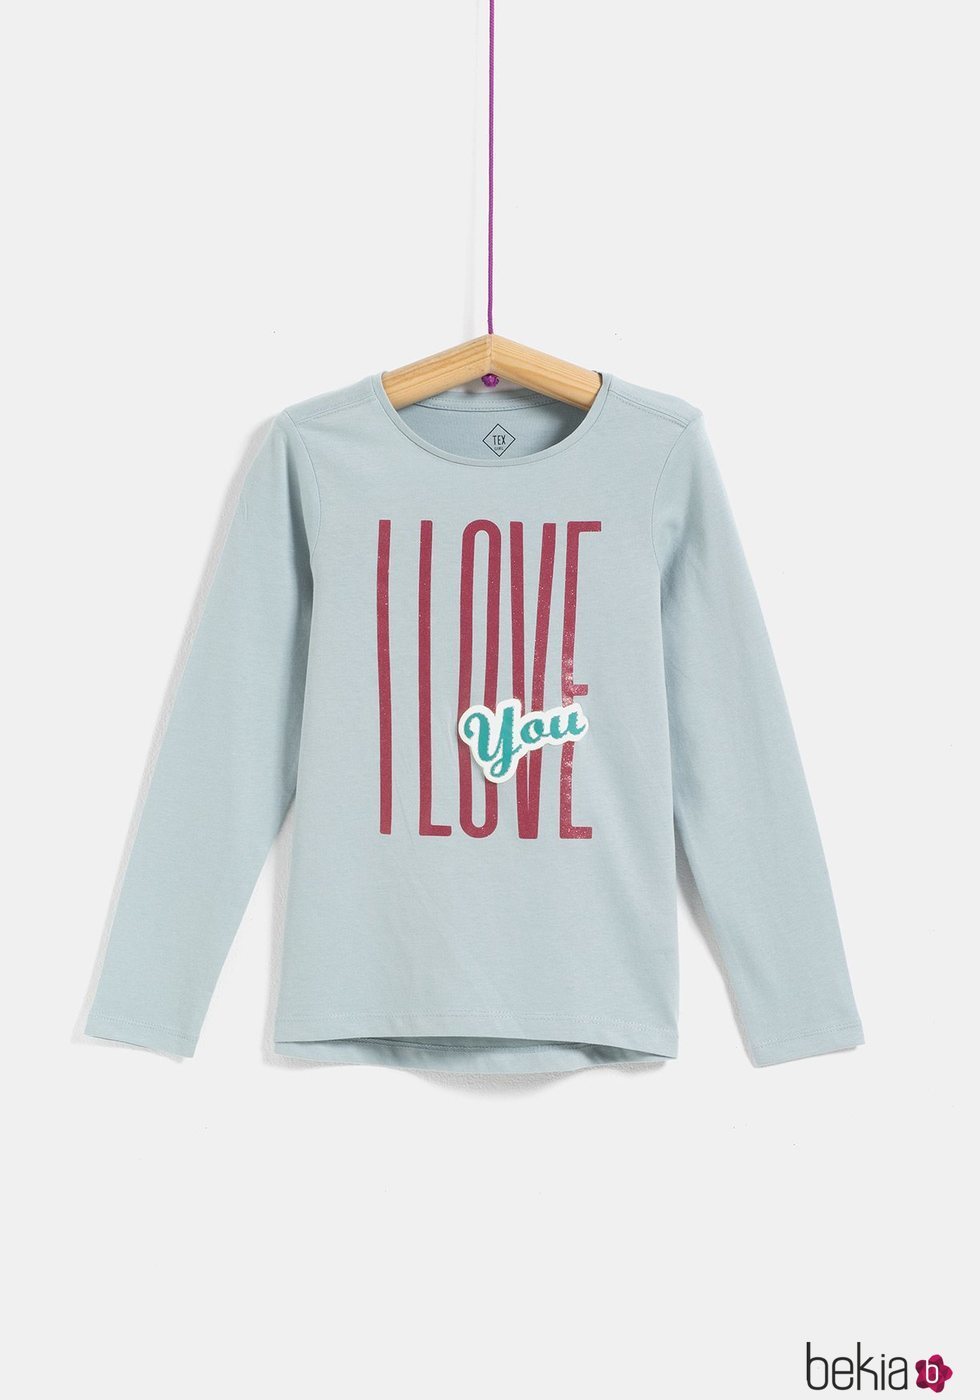 Camiseta niña 'Love' de la colección 'I-O' de Carrefour y TEX para otoño/invierno 2019